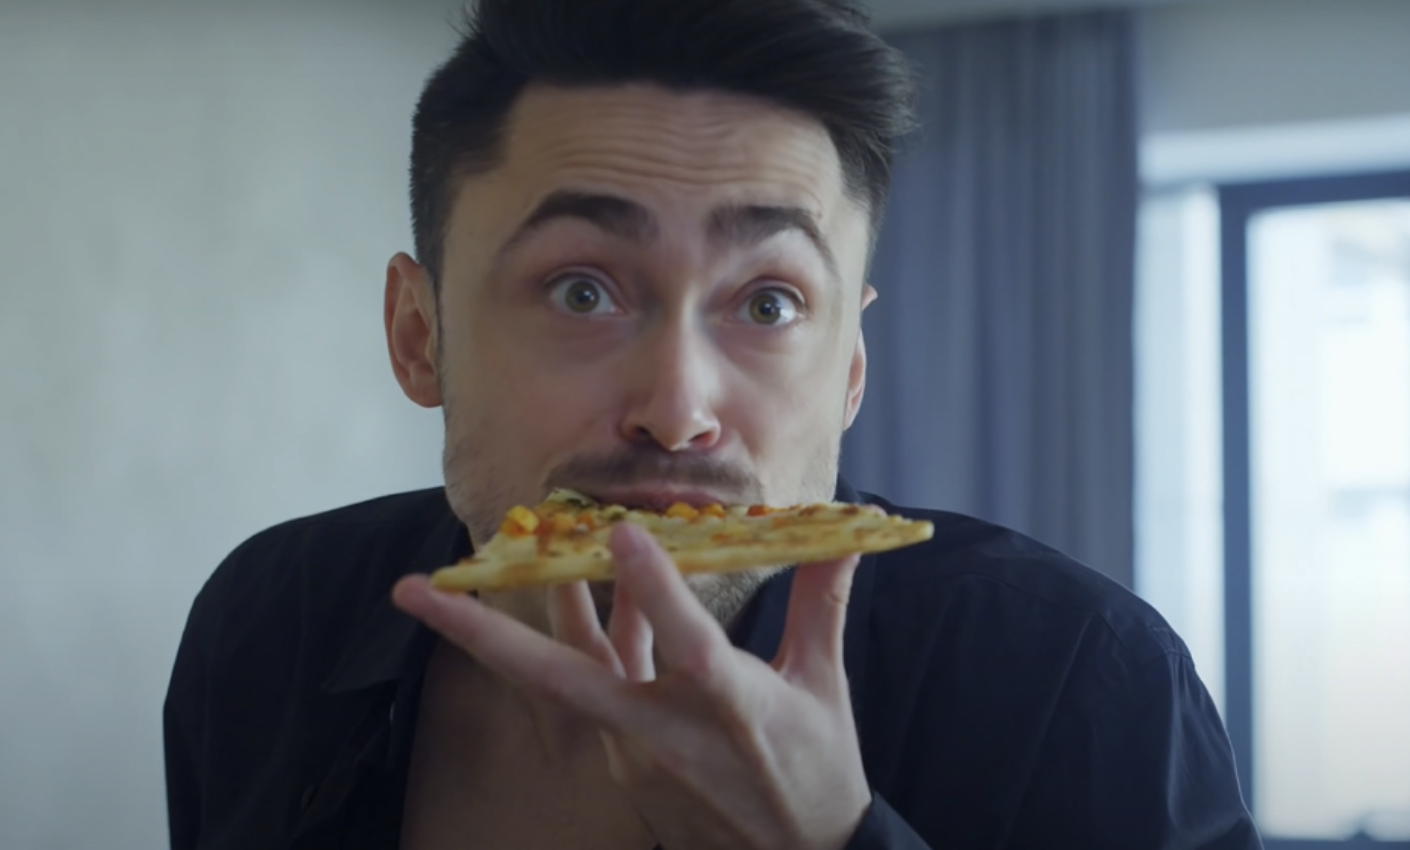 Man eating pizza | Source: YouTube / DramatizeMe